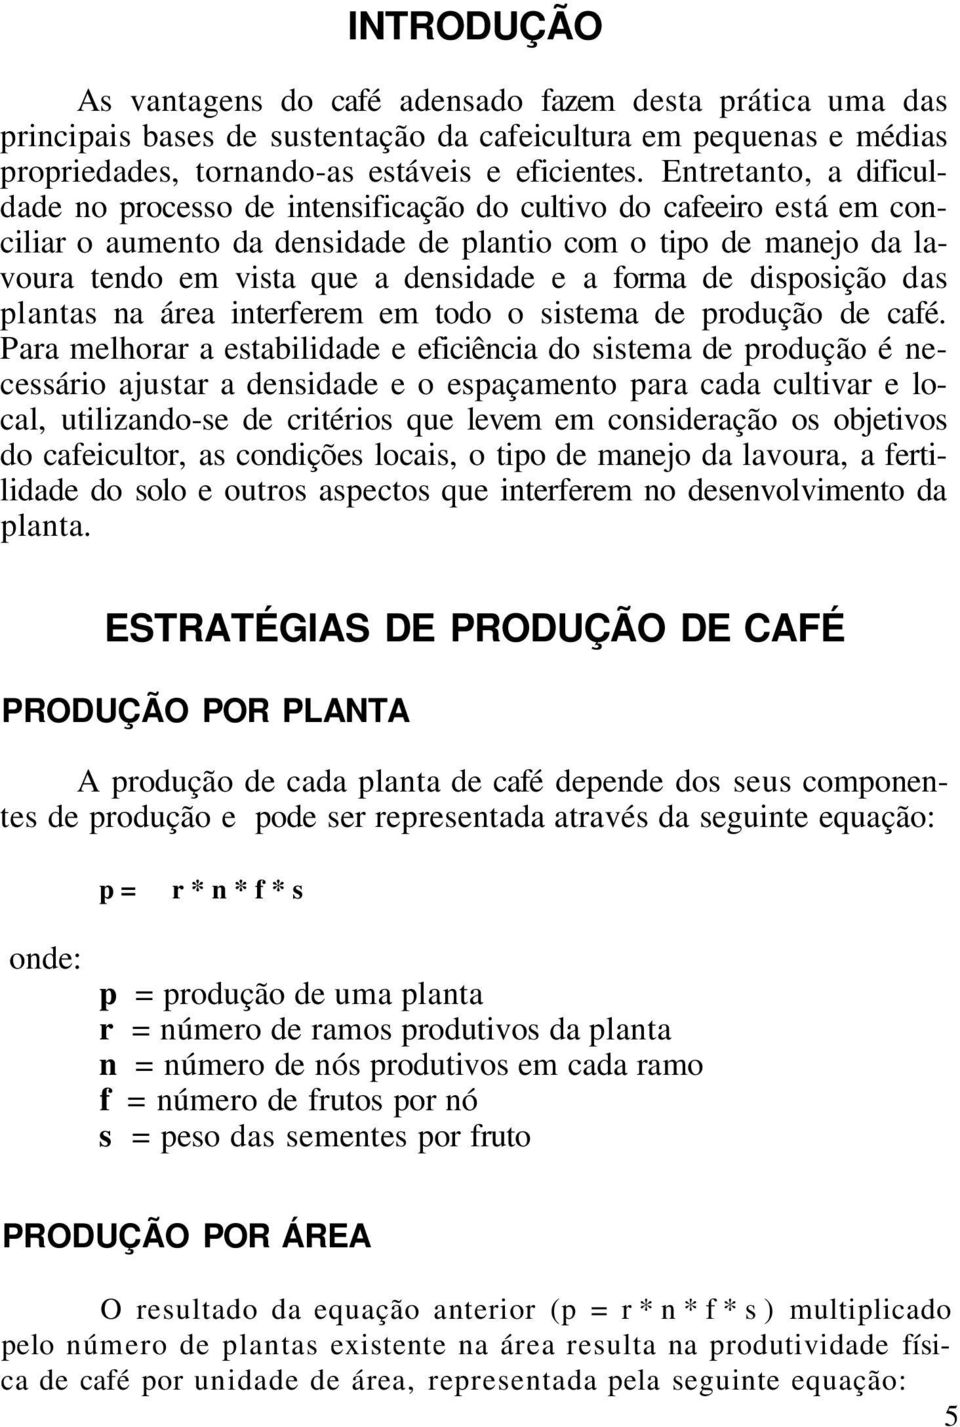 forma de disposição das plantas na área interferem em todo o sistema de produção de café.